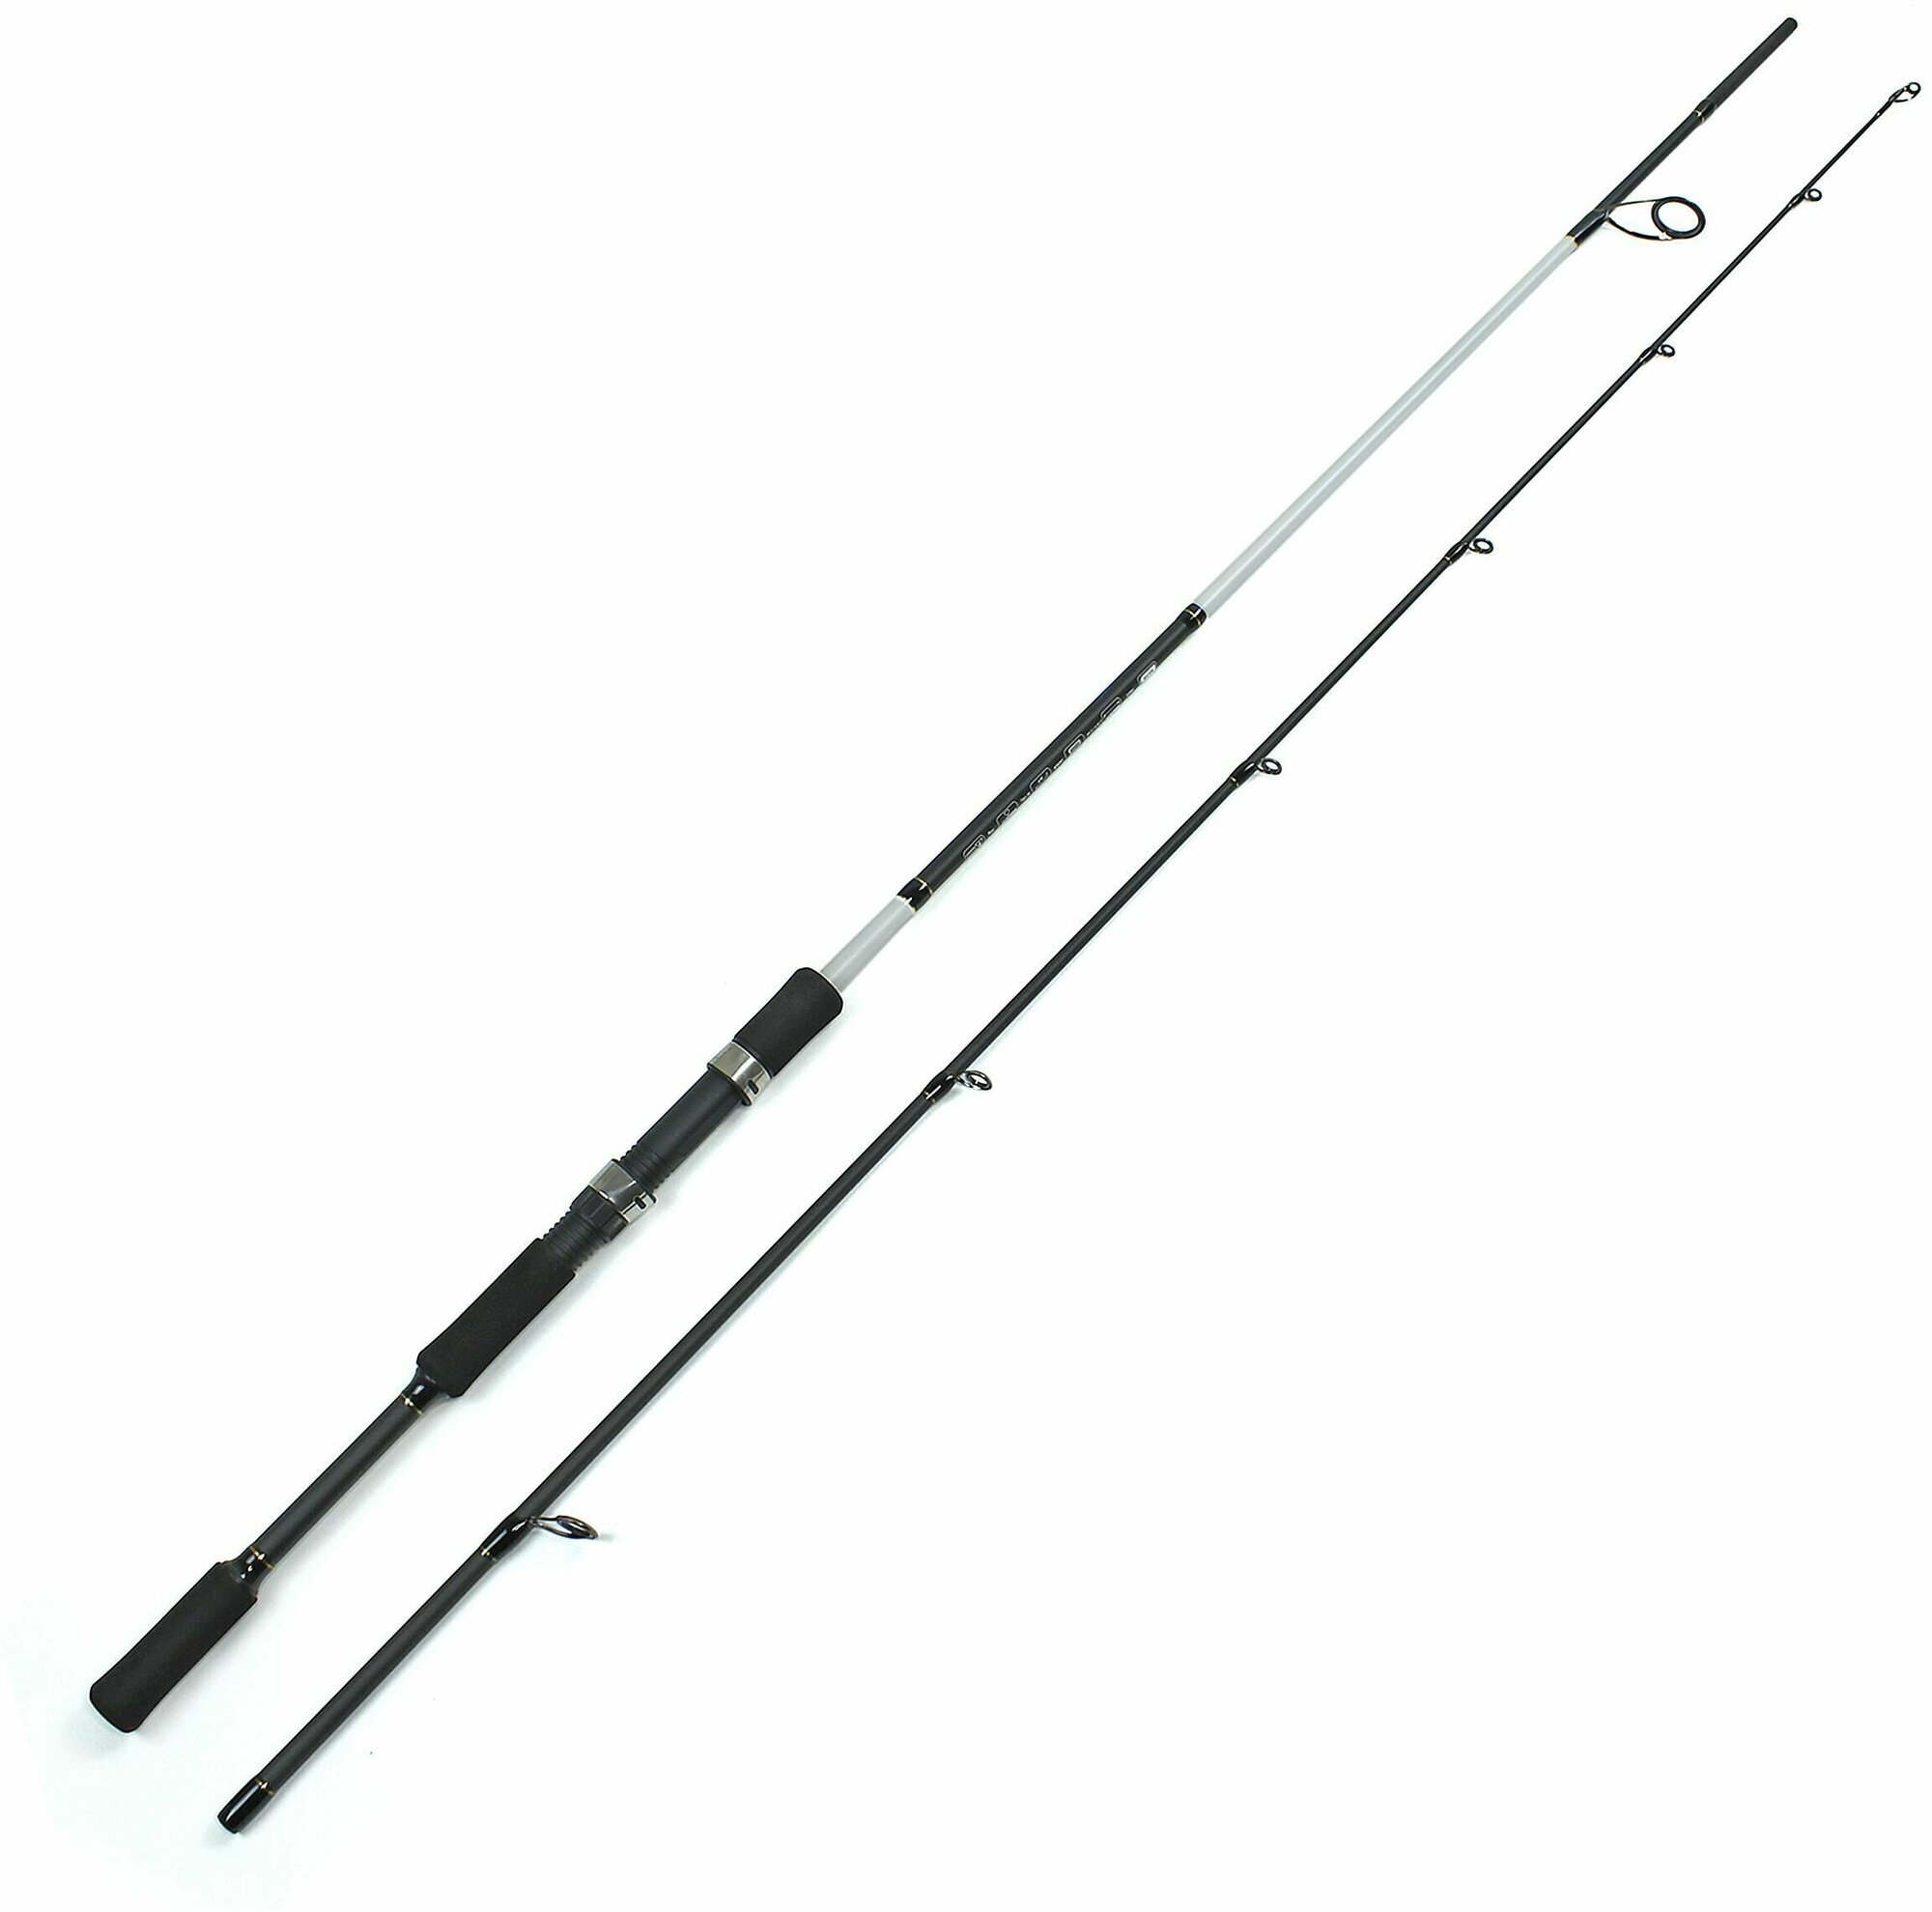 Спиннинг штекерный MIFINE PIRATE SPIN 2.70м (50-100гр), рыболовный, удилище для рыбалки